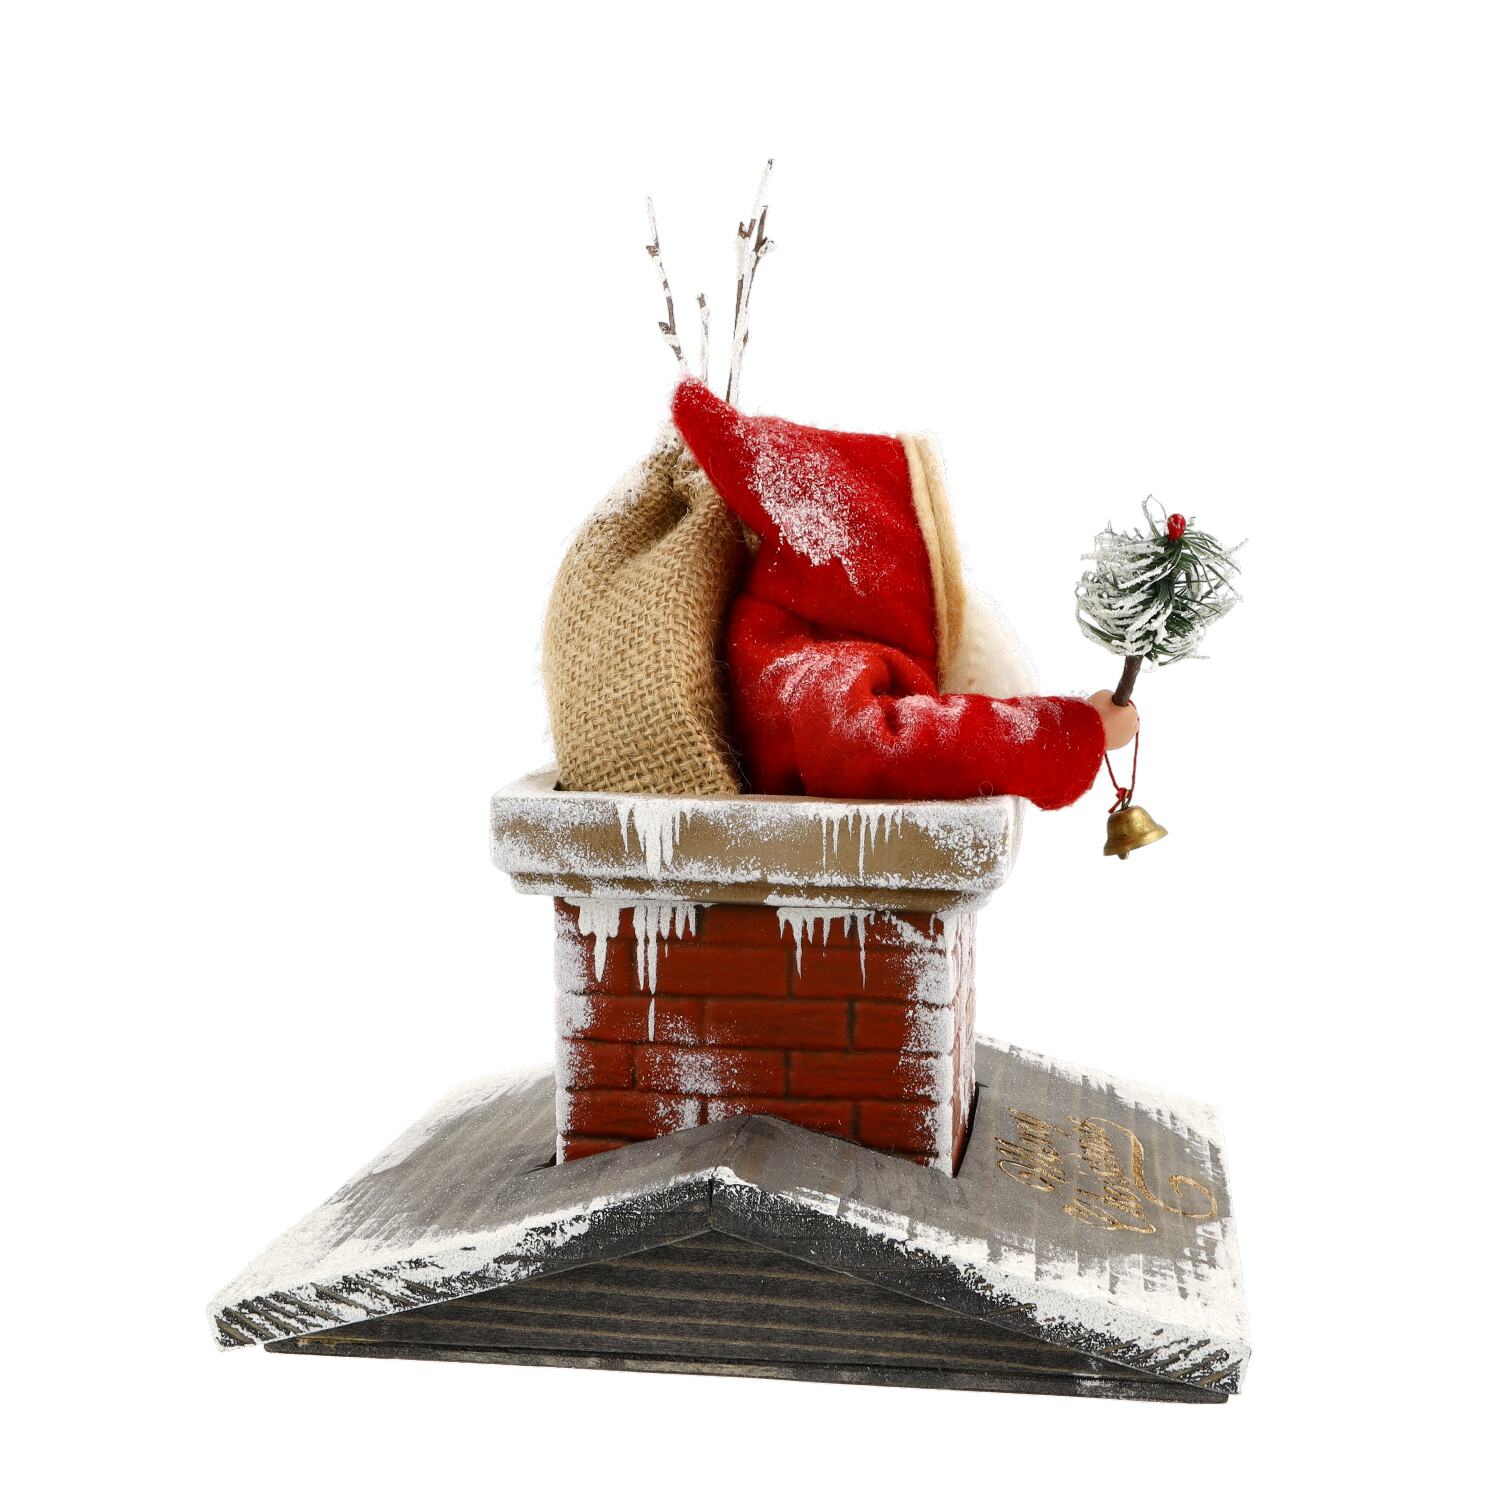 Weihnachtsmann im Schornstein - Marolin Papiermaché - made in Germany